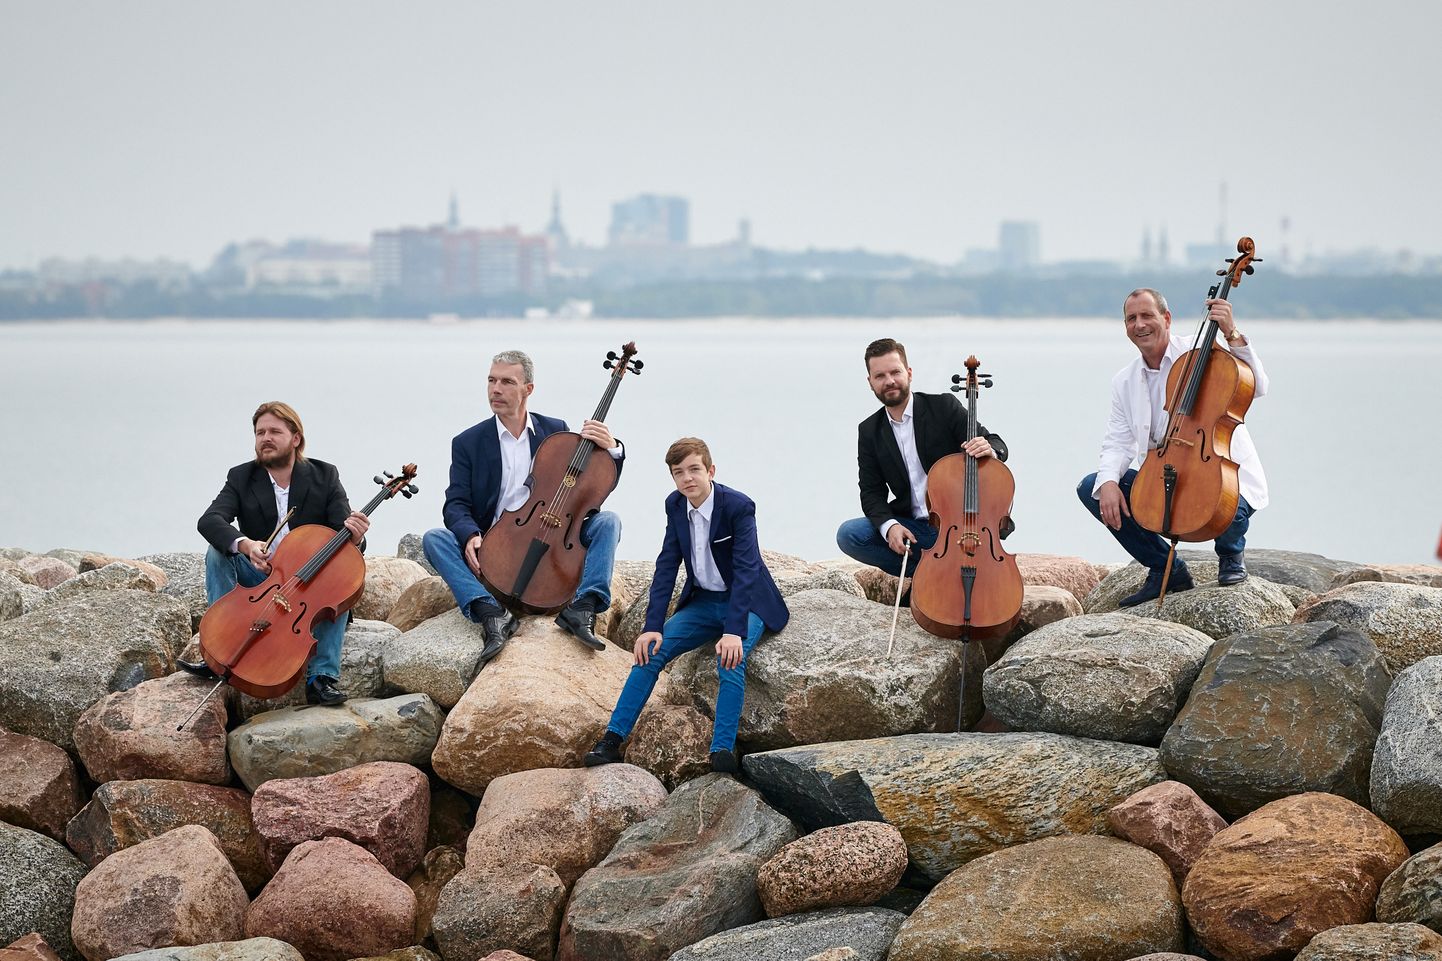 Tšellokvartett C-Jam ja Mikk Kaasik esinevad Sakala keskuses koos Viljandi noorte sümfooniaorkestiga. Kontsert kannab pealkirja «Illusioon».